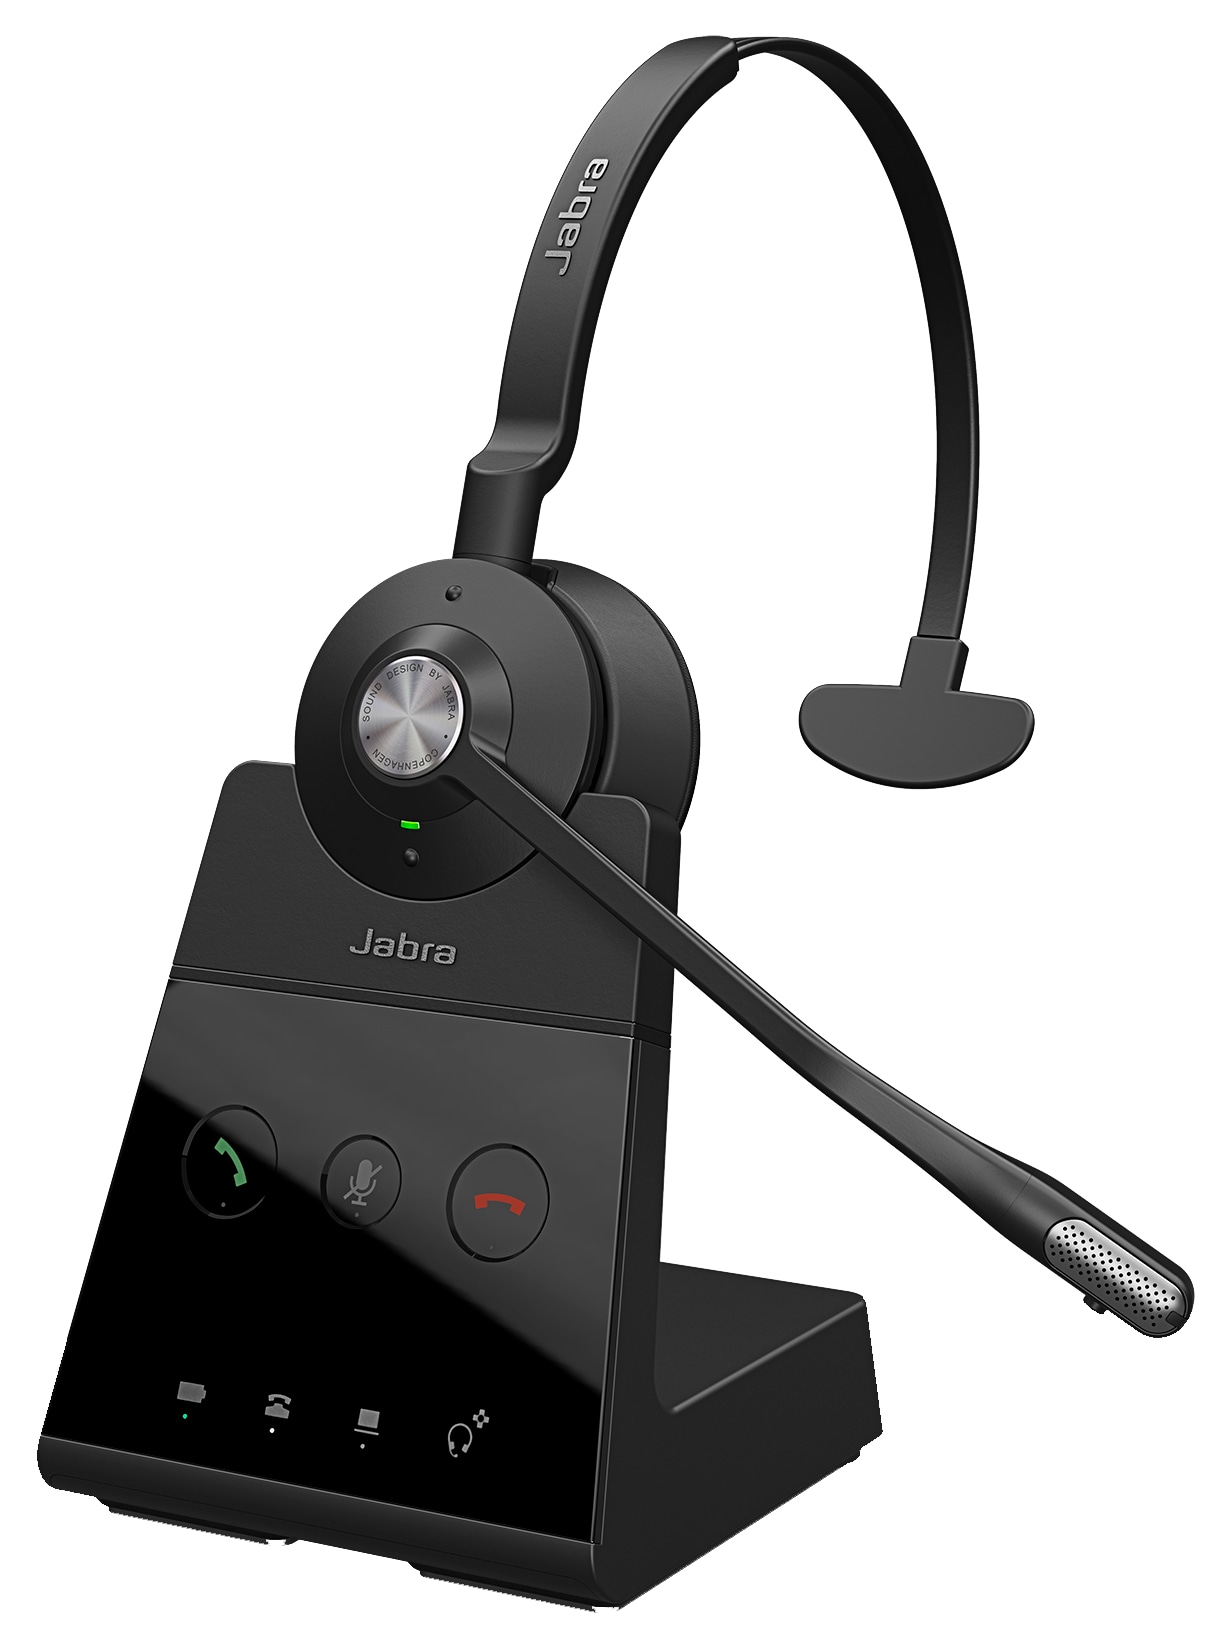 daar ben ik het mee eens Standaard dik Jabra Engage 65 Mono - headset - 9553-553-125 - Wireless Headsets - CDW.com